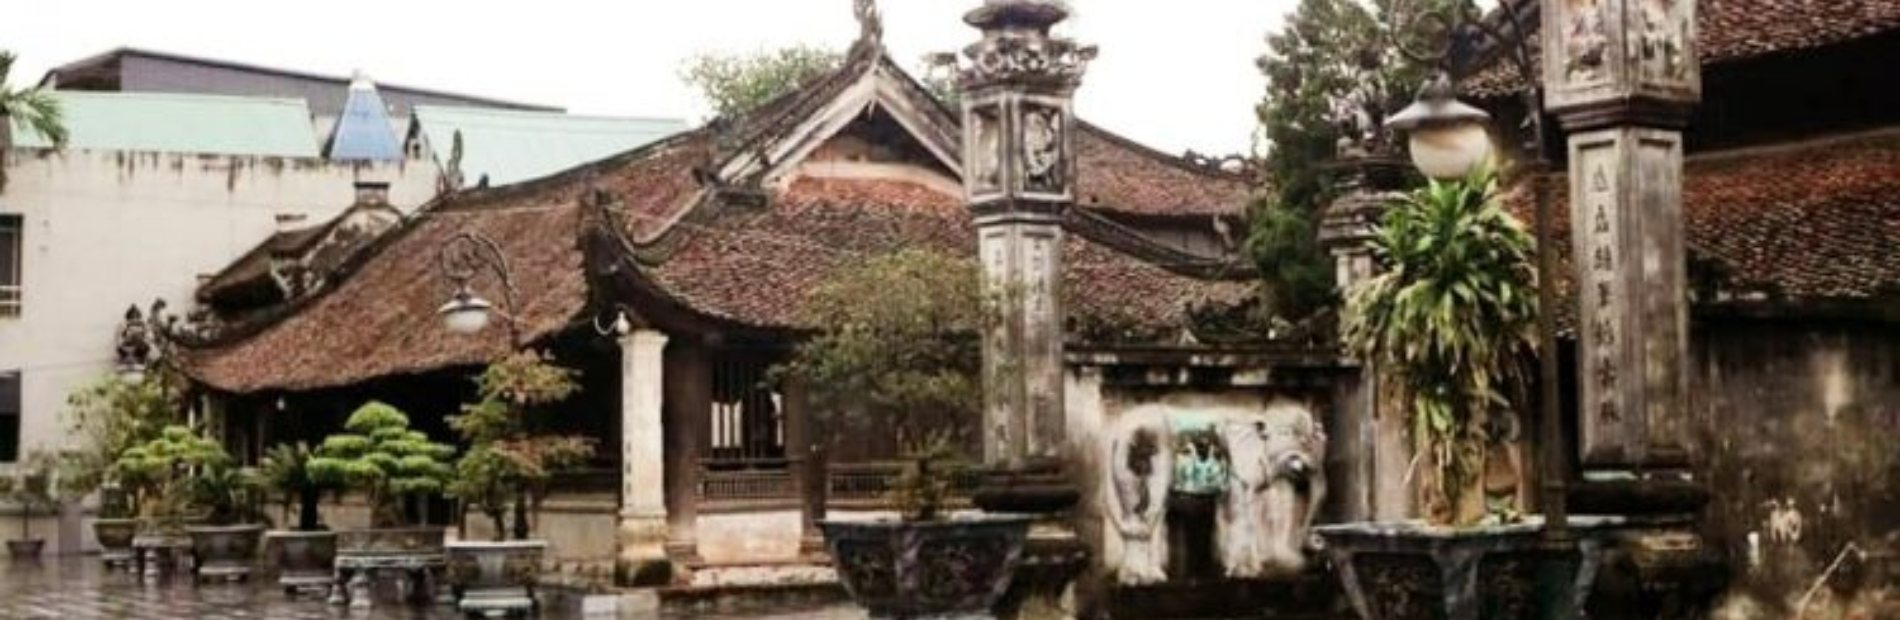 Đình cổ Hùng Lô - Di tích lịch sử vua Hùng từ xa xưa 